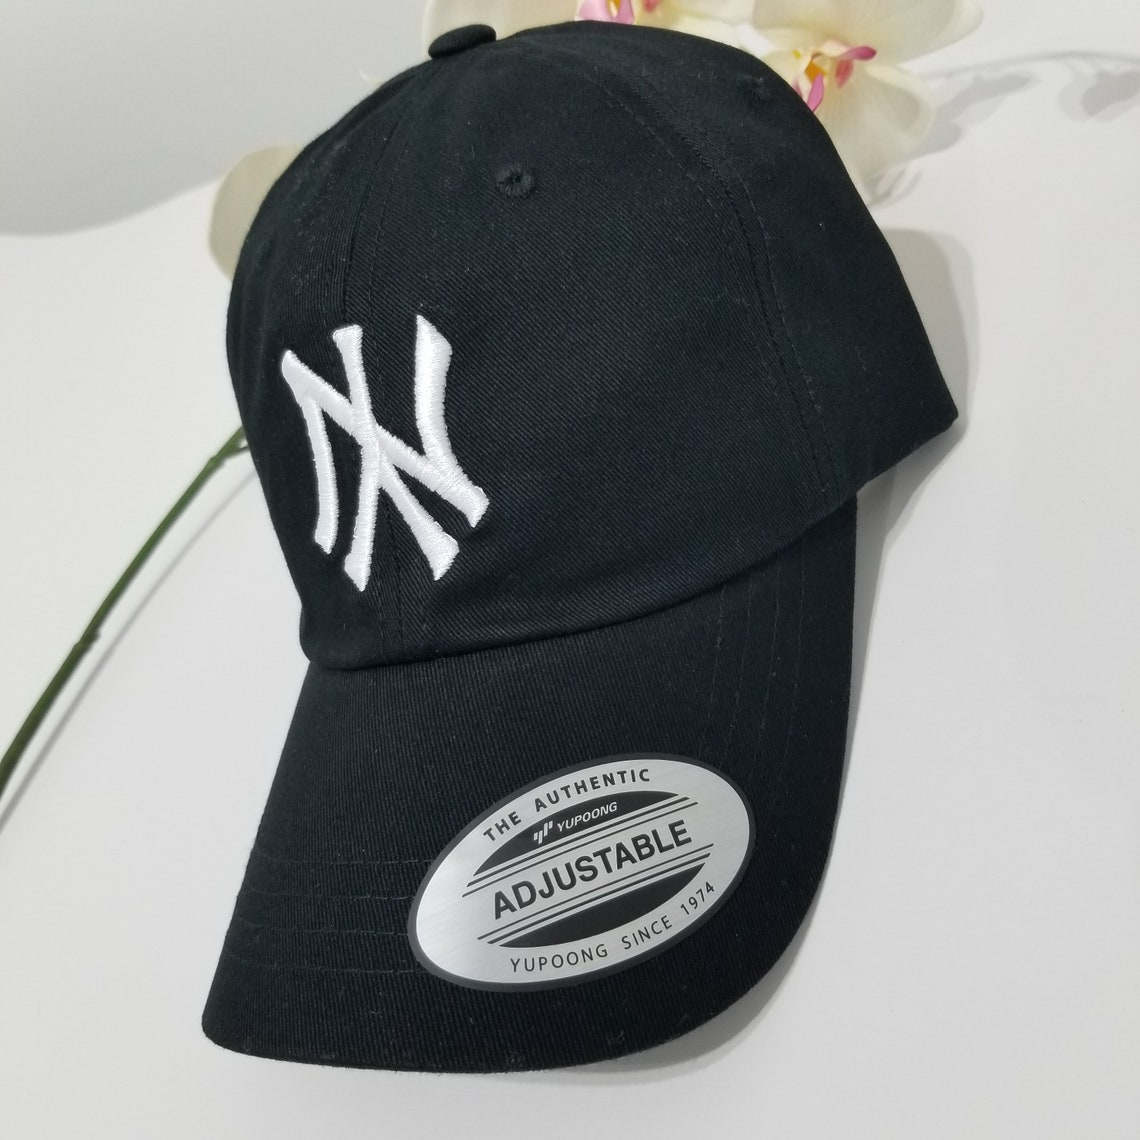 NY Hat Upside Down NY Hat NY Yankees Hat Ny Hats Red | Etsy